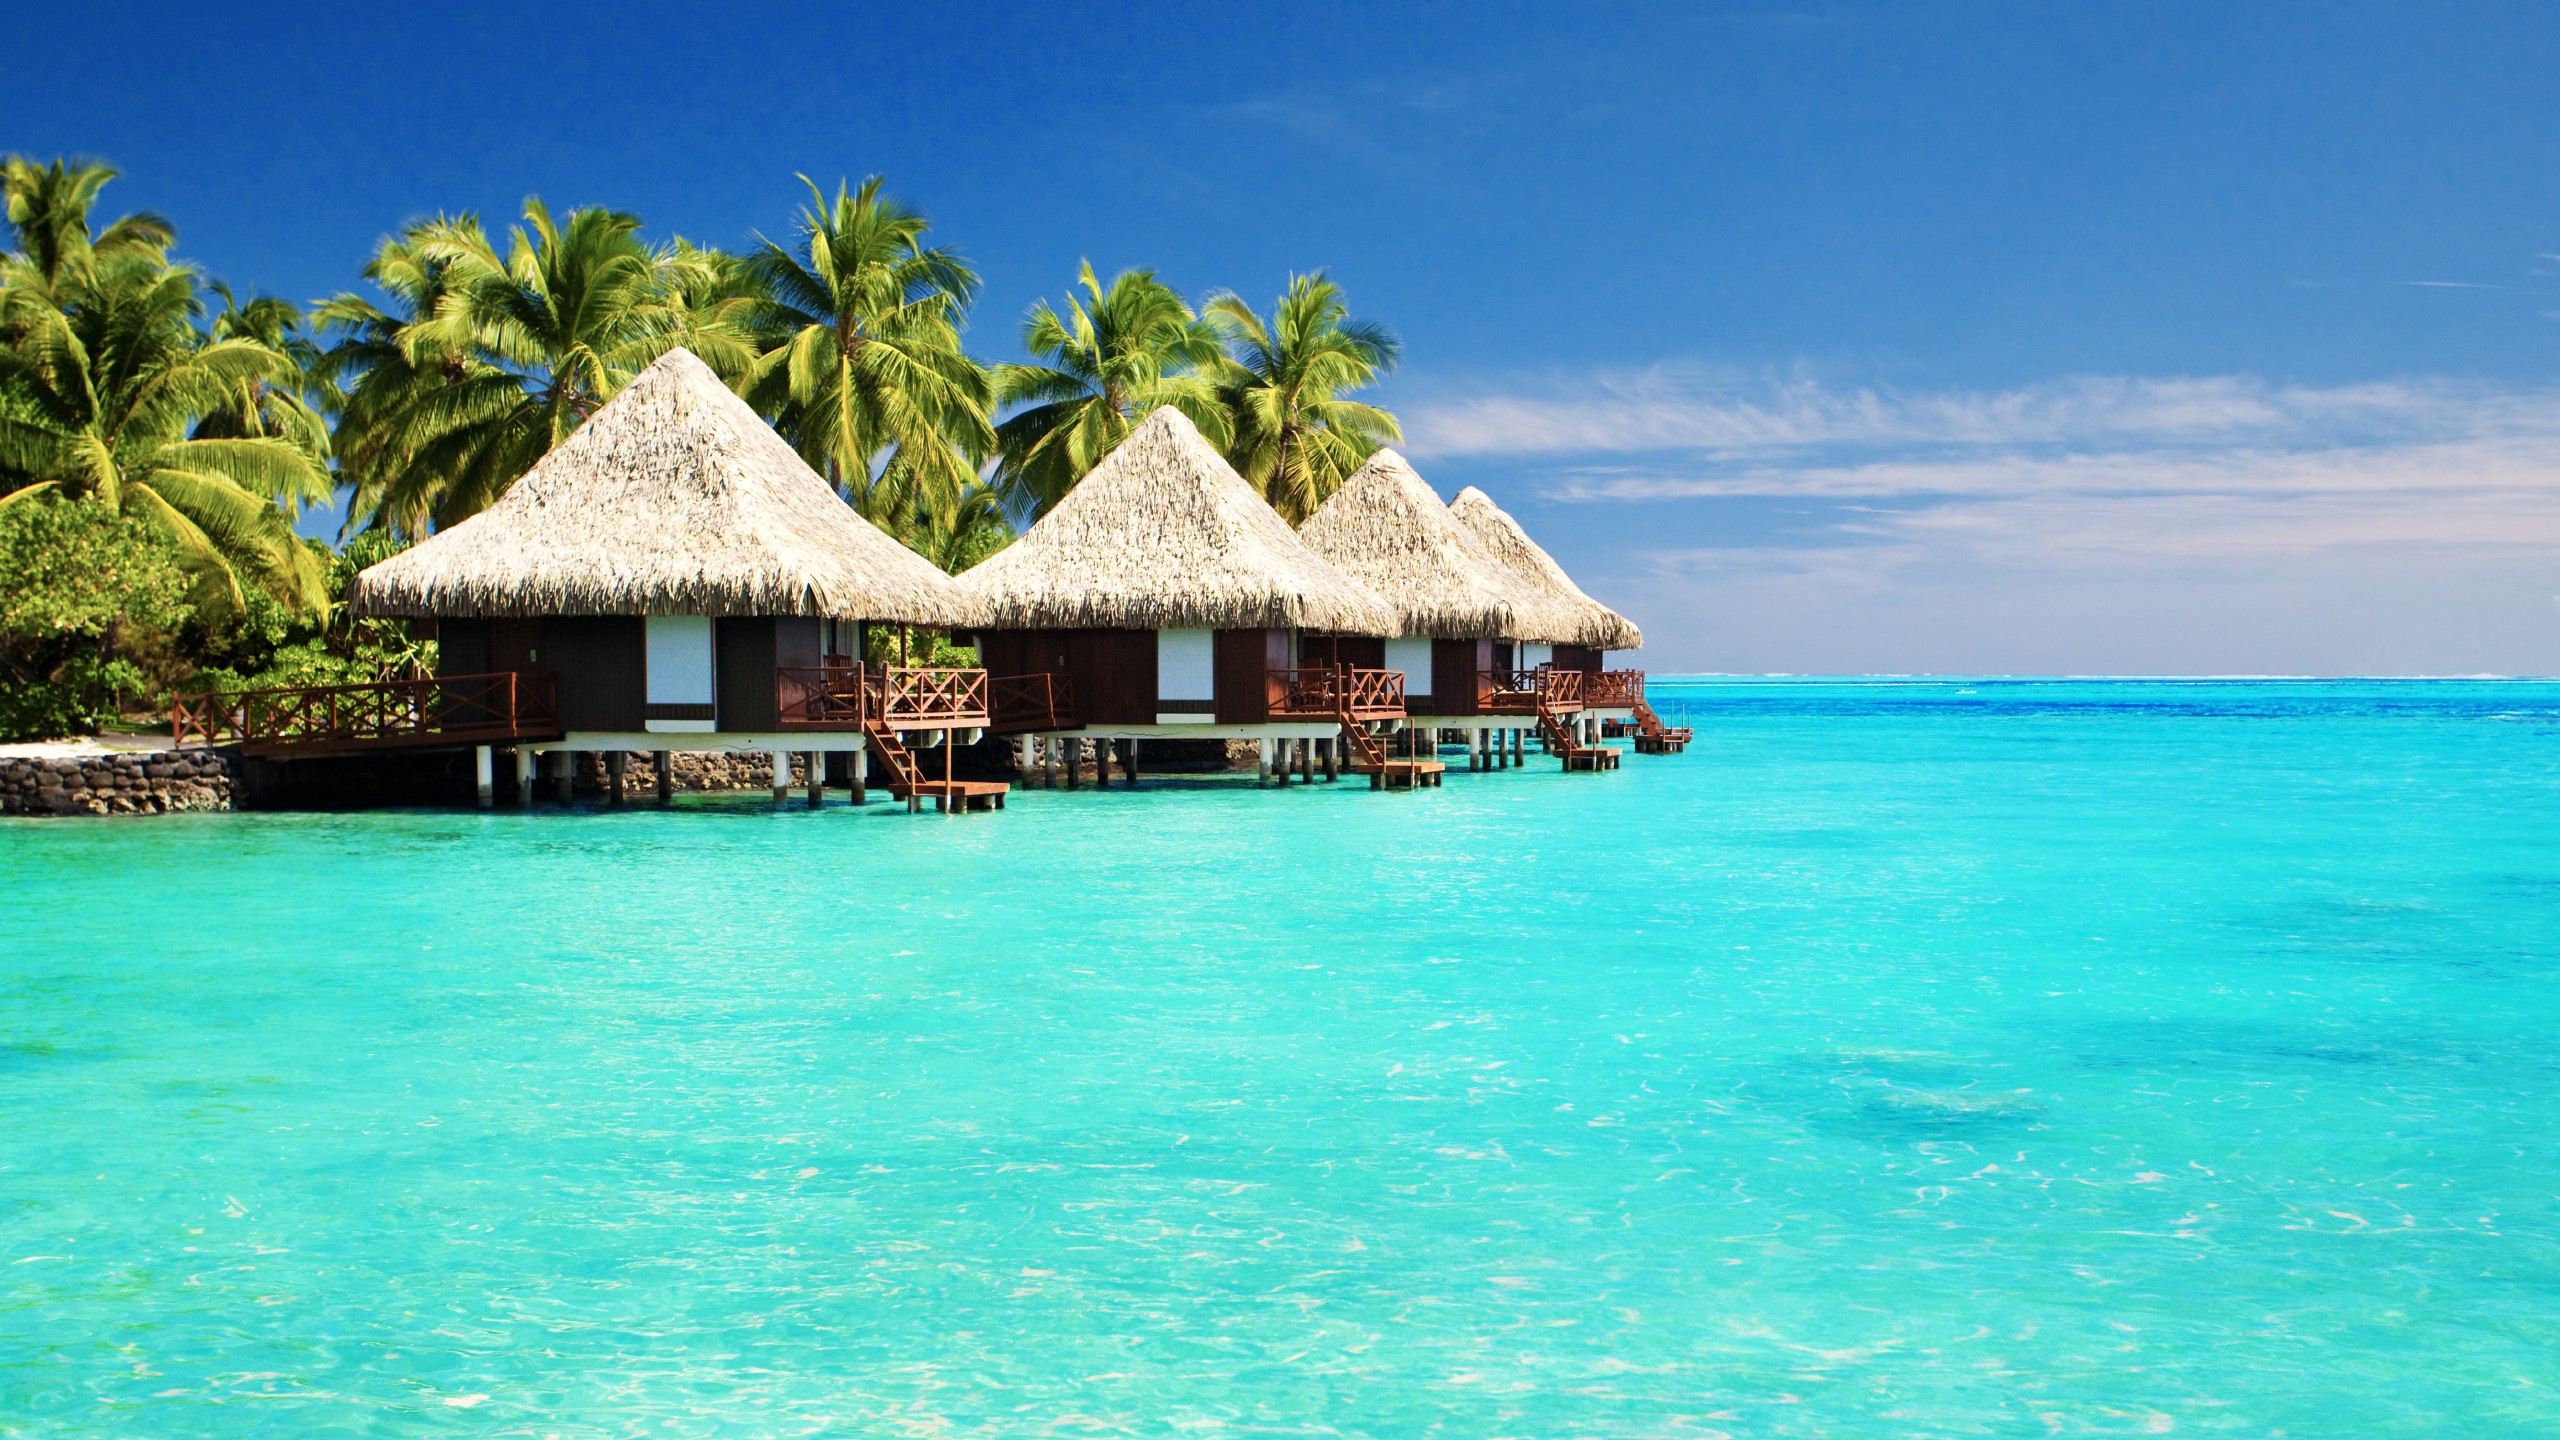 Beach Huts on Tropical Ocean